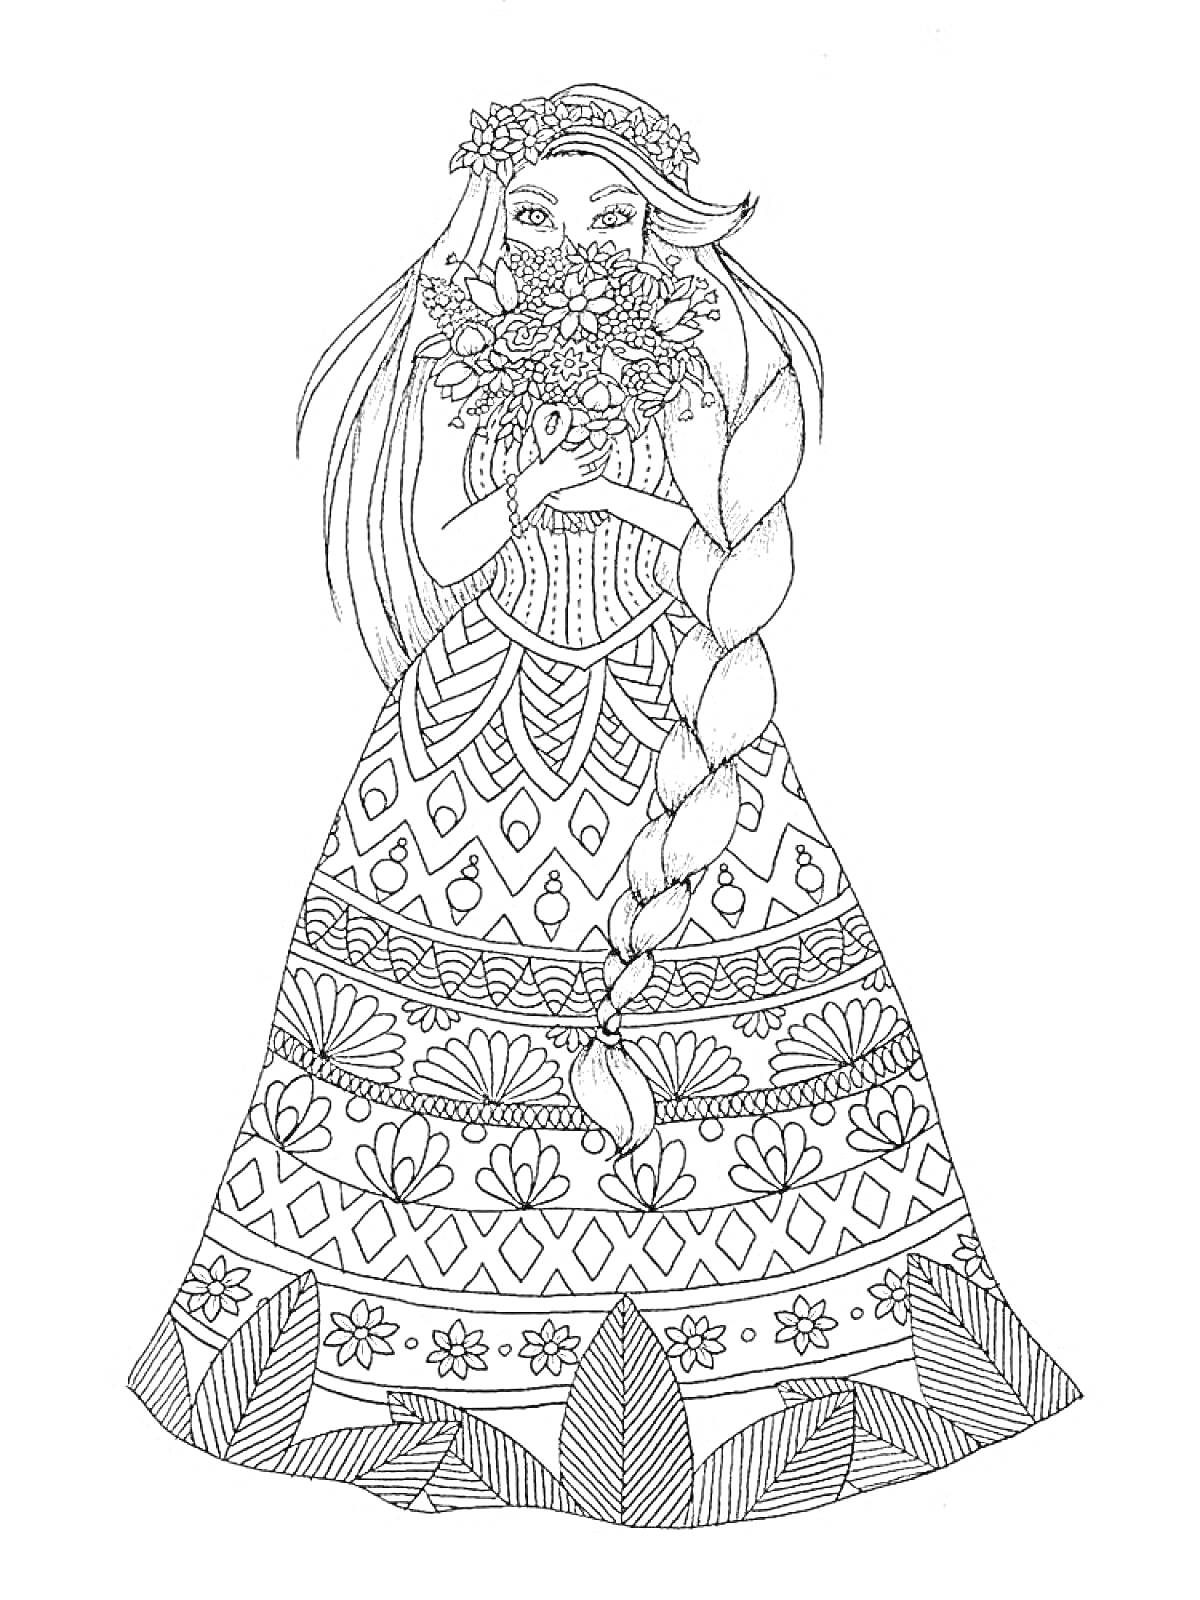 Раскраска Девушка с длинной косой в платье с узорами, держащая букет цветов